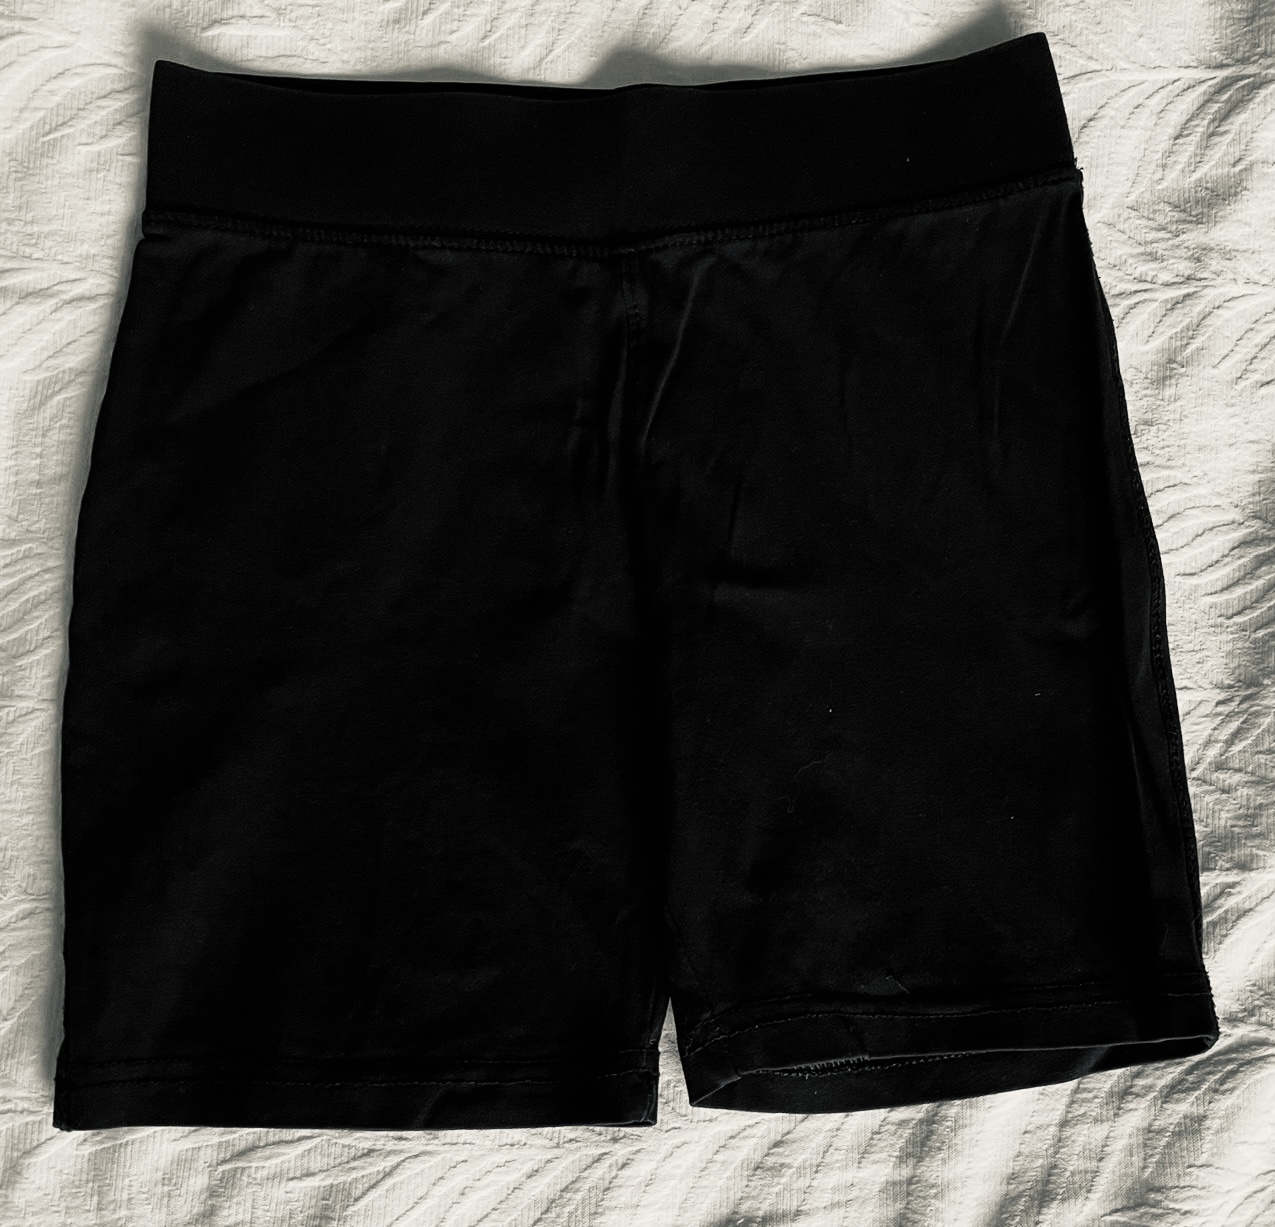 Black Cycling Shorts 5-6 / 6 yrs